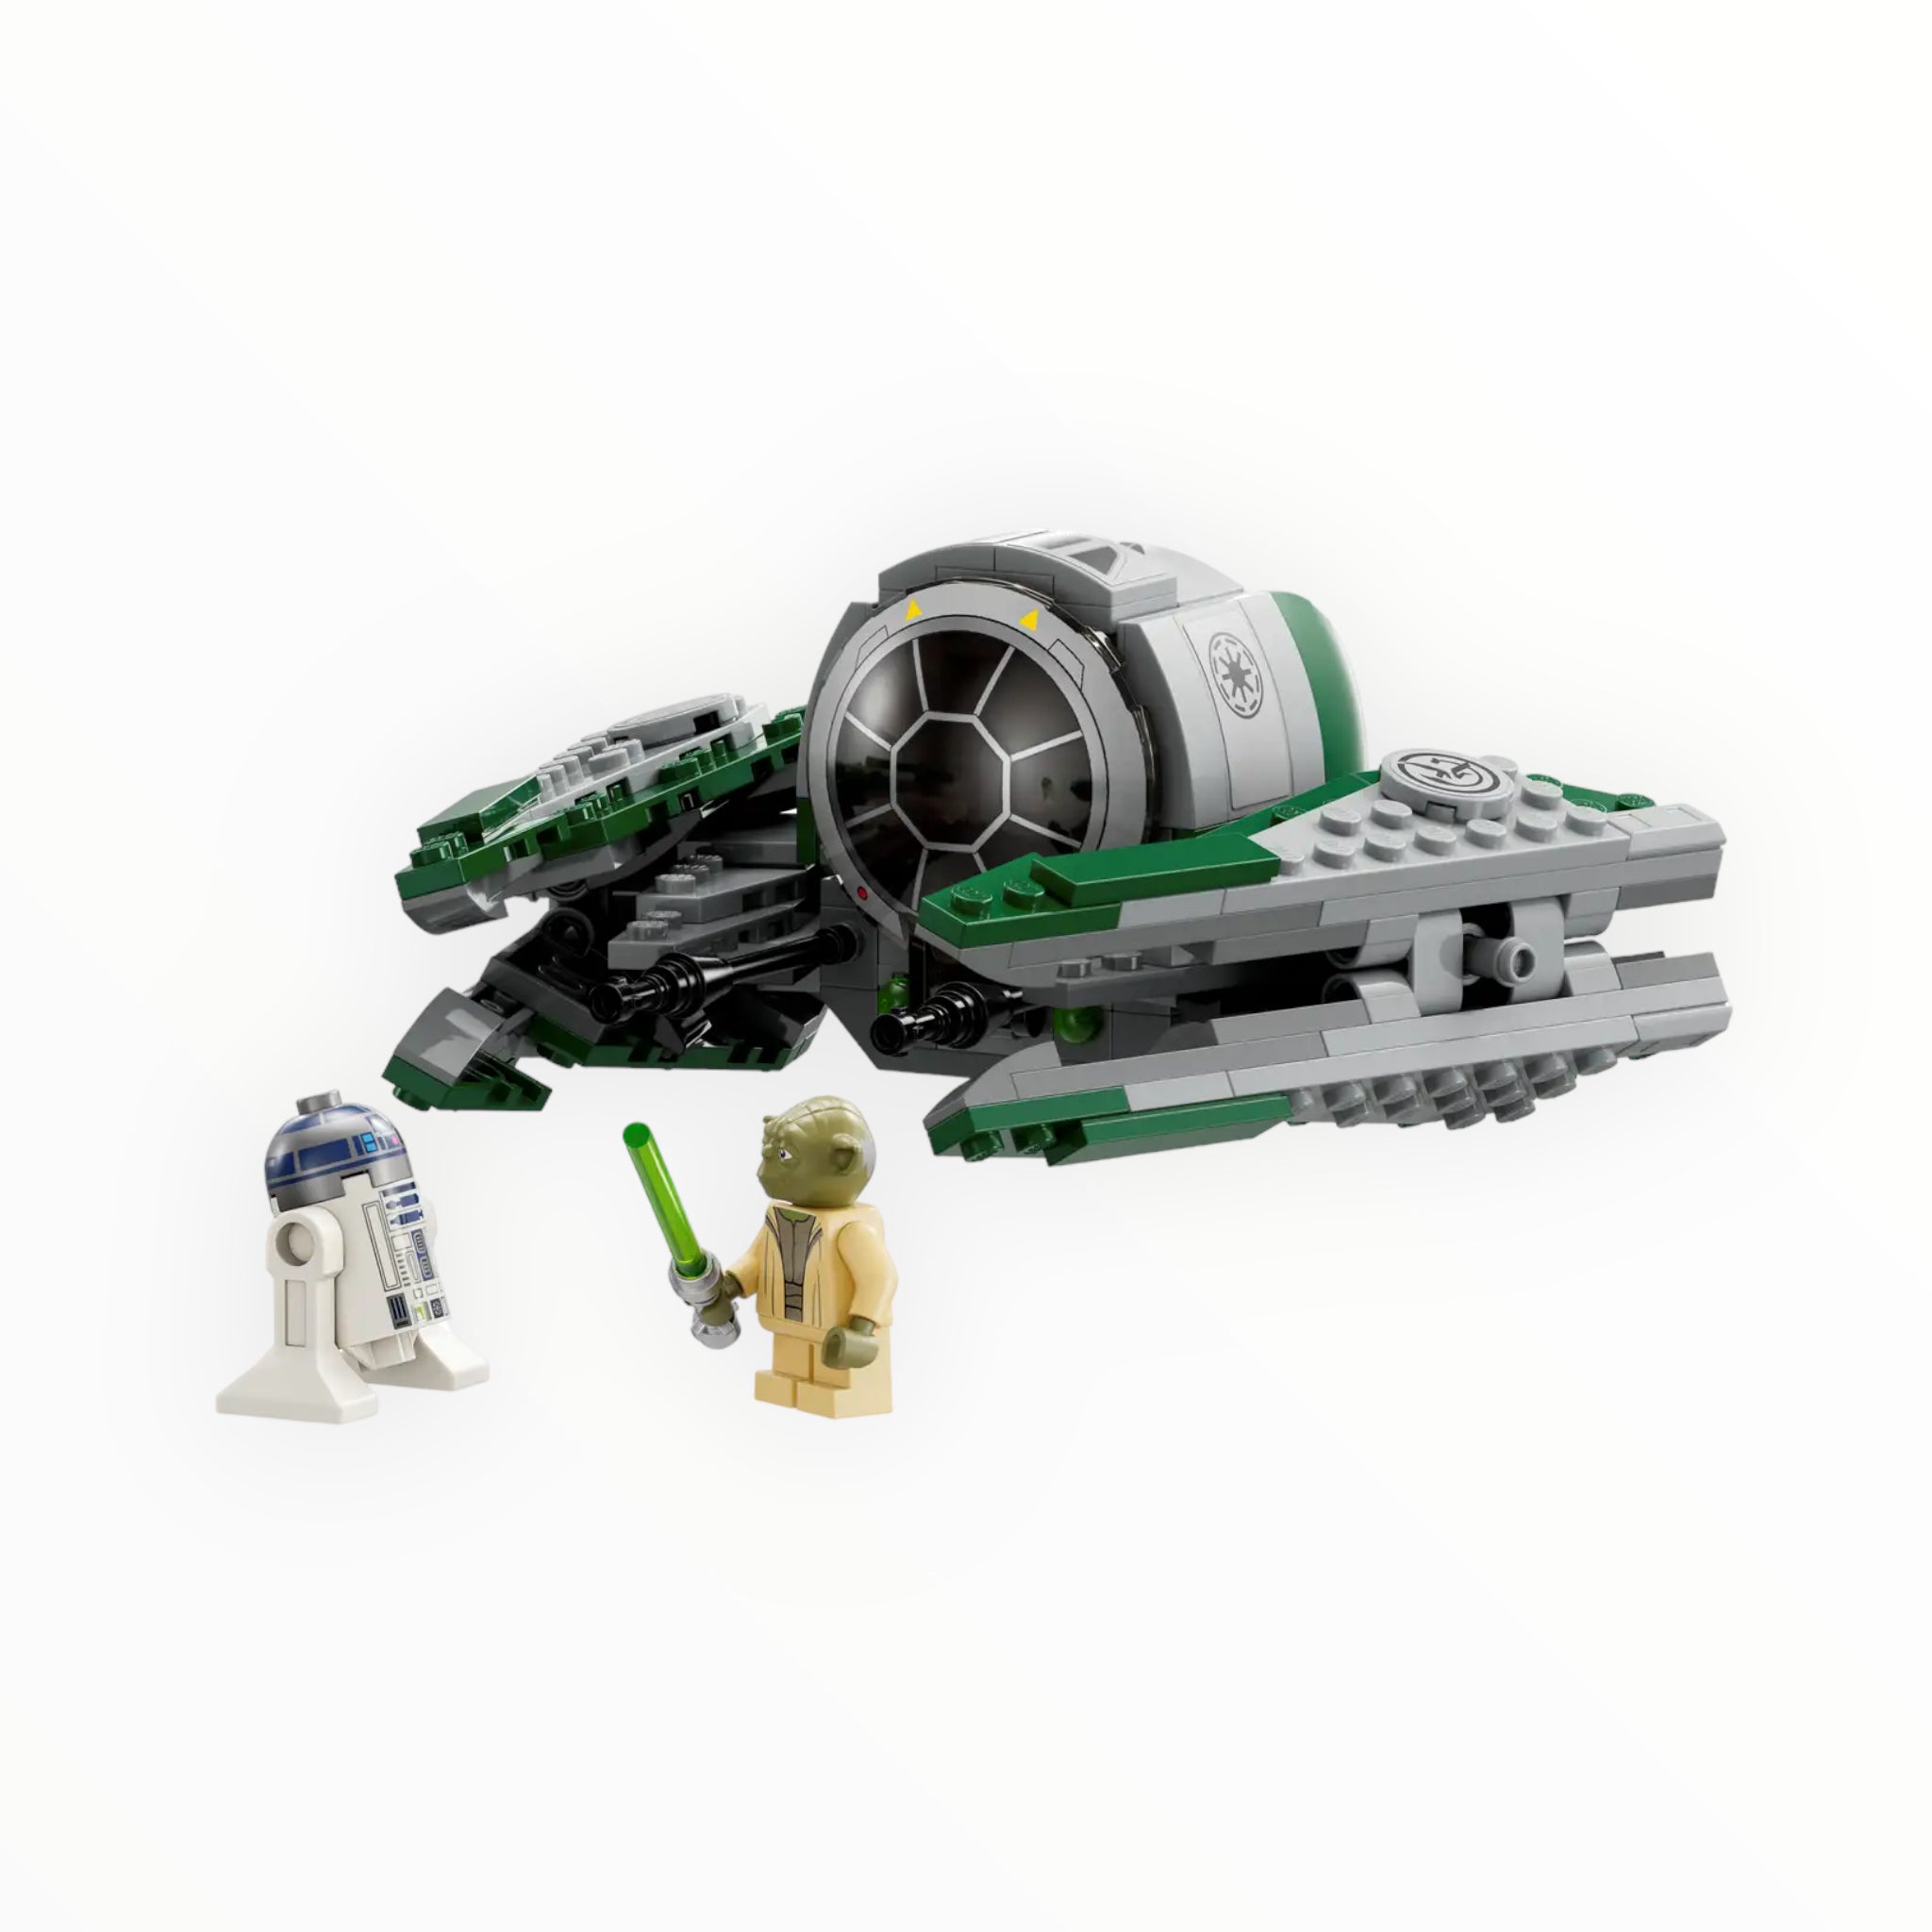 75360 Star Wars Yoda’s Jedi Starfighter